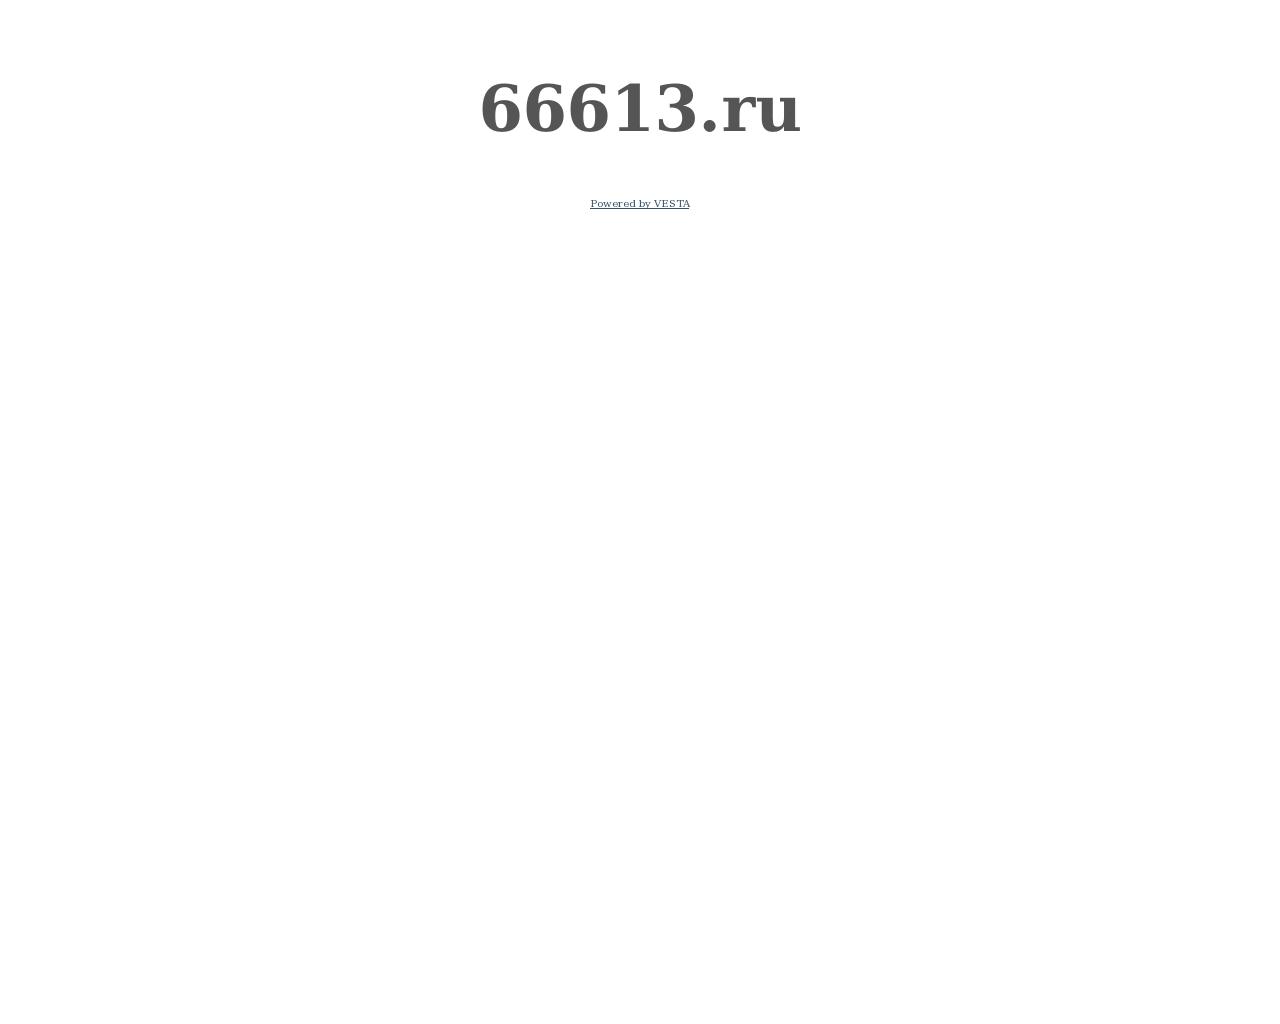 Изображение сайта 66613.ru в разрешении 1280x1024